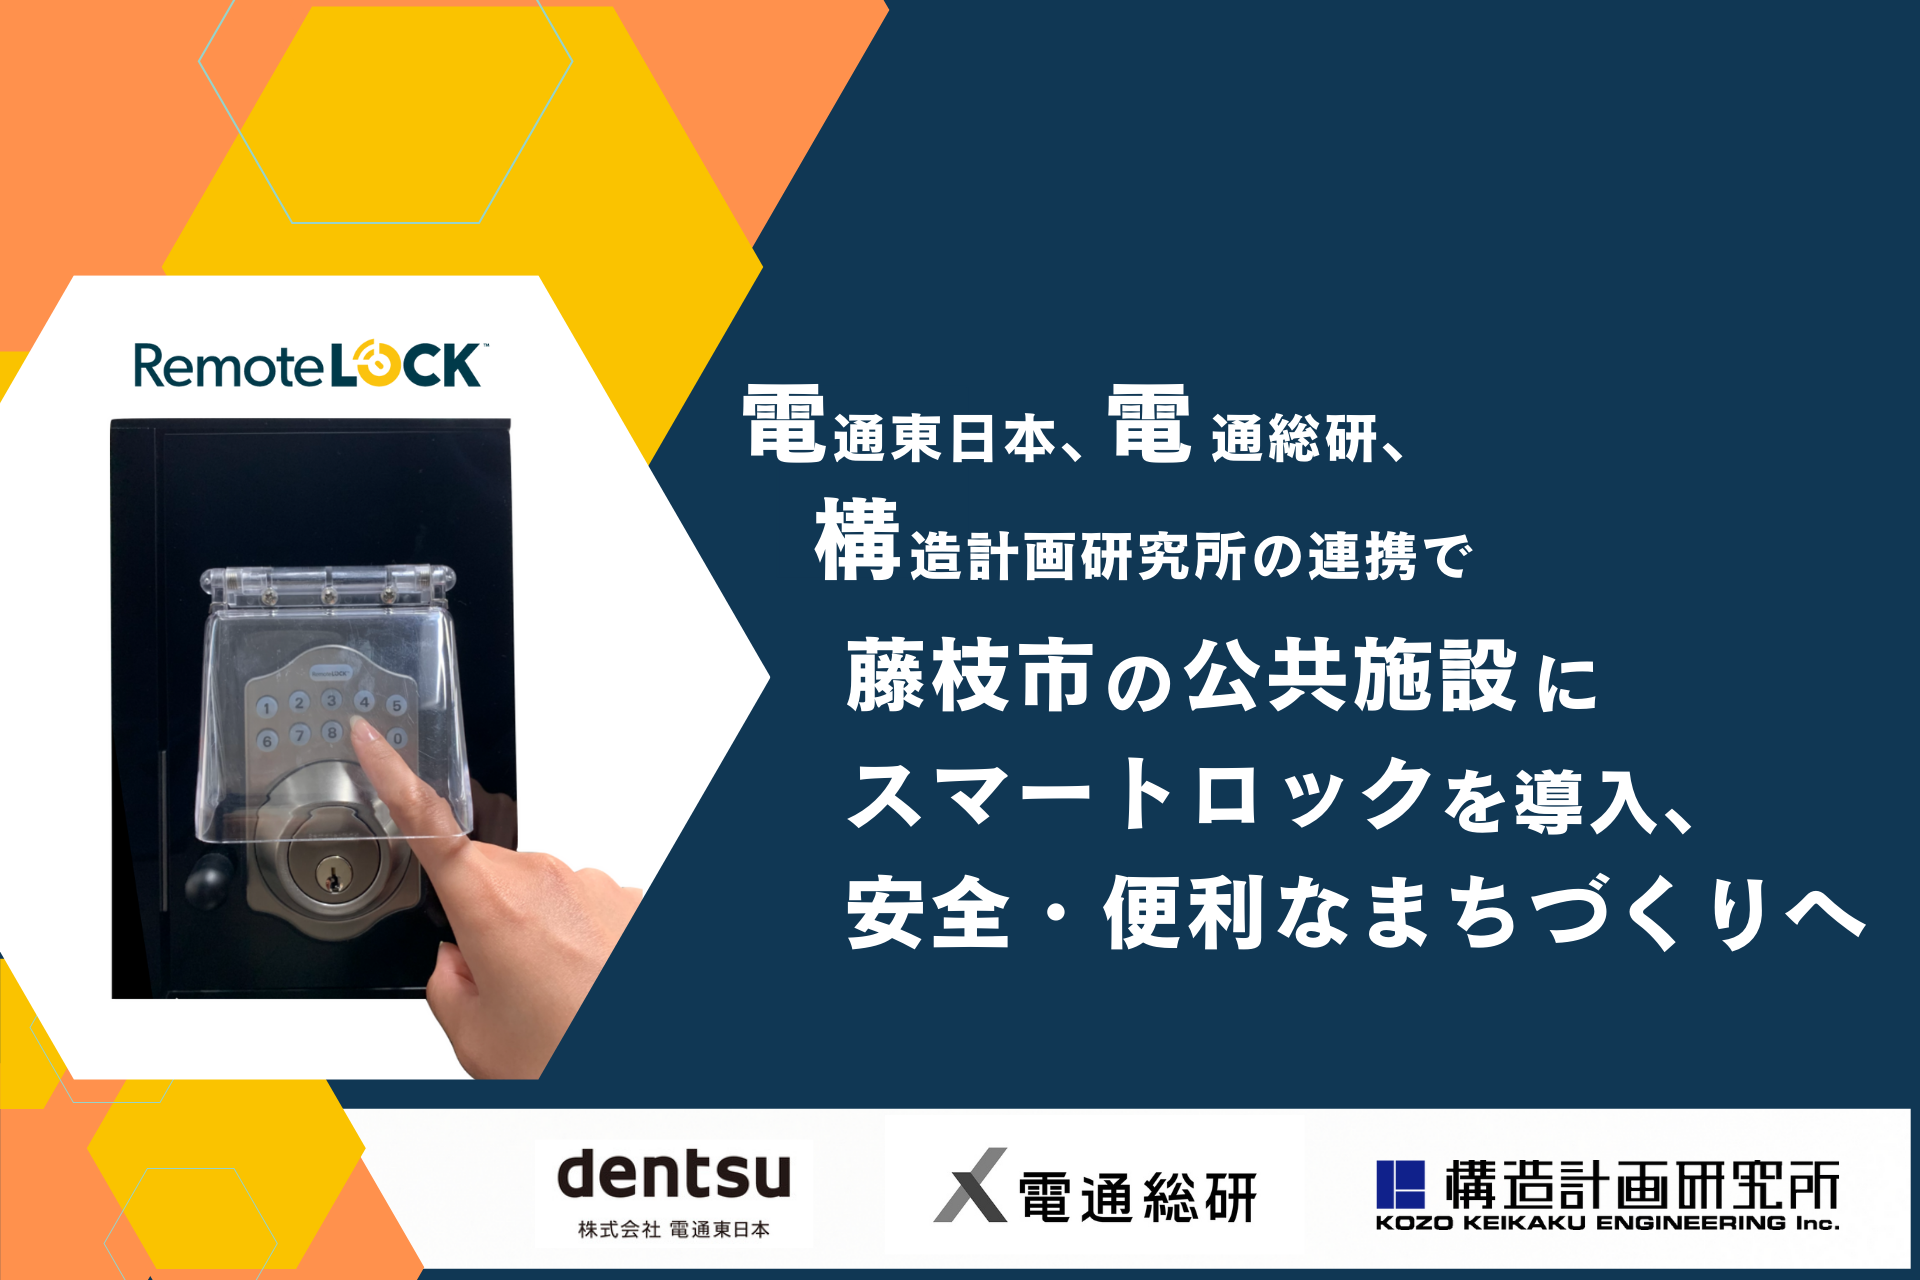 電通東日本、電通総研、構造計画研究所の連携で藤枝市の公共施設にスマートロックを導入、安全・便利なまちづくりへ